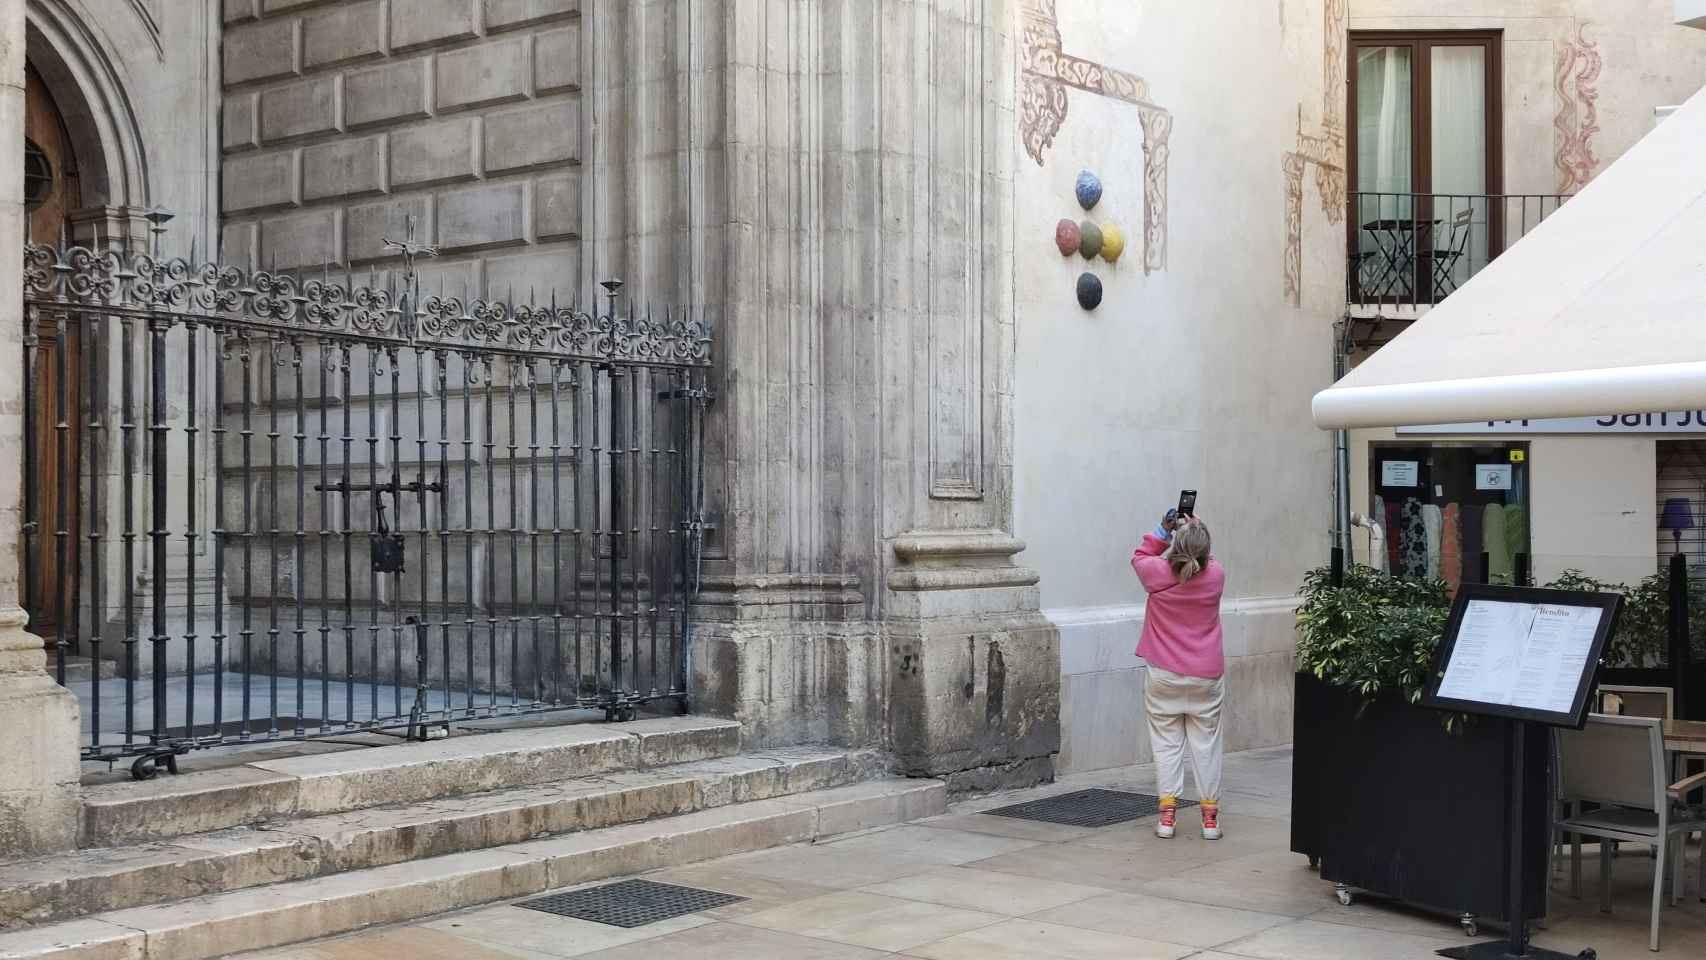 Las Cinco Bolas de la iglesia de San Juan siguen ocultando su origen.